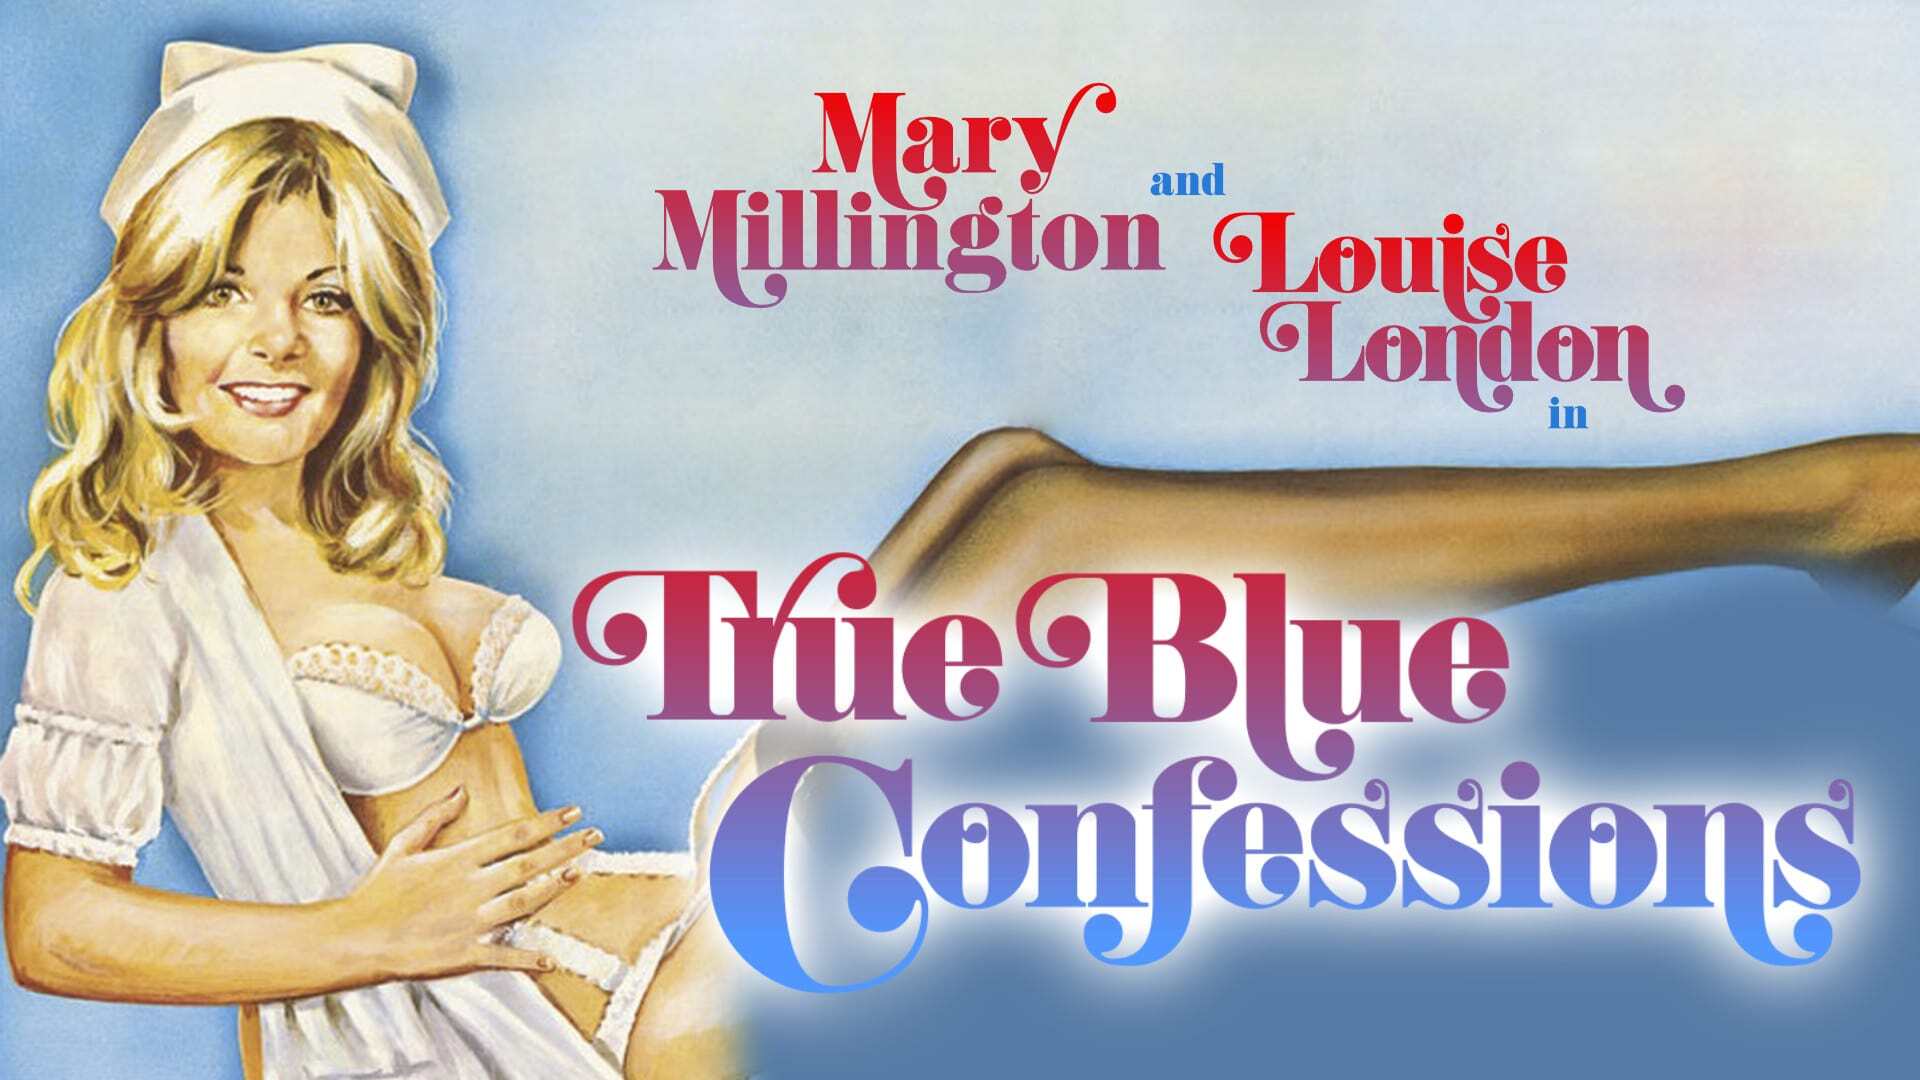 მერი მილინგტონის ცისფერი აღიარებები / Mary Millington's True Blue Confessions